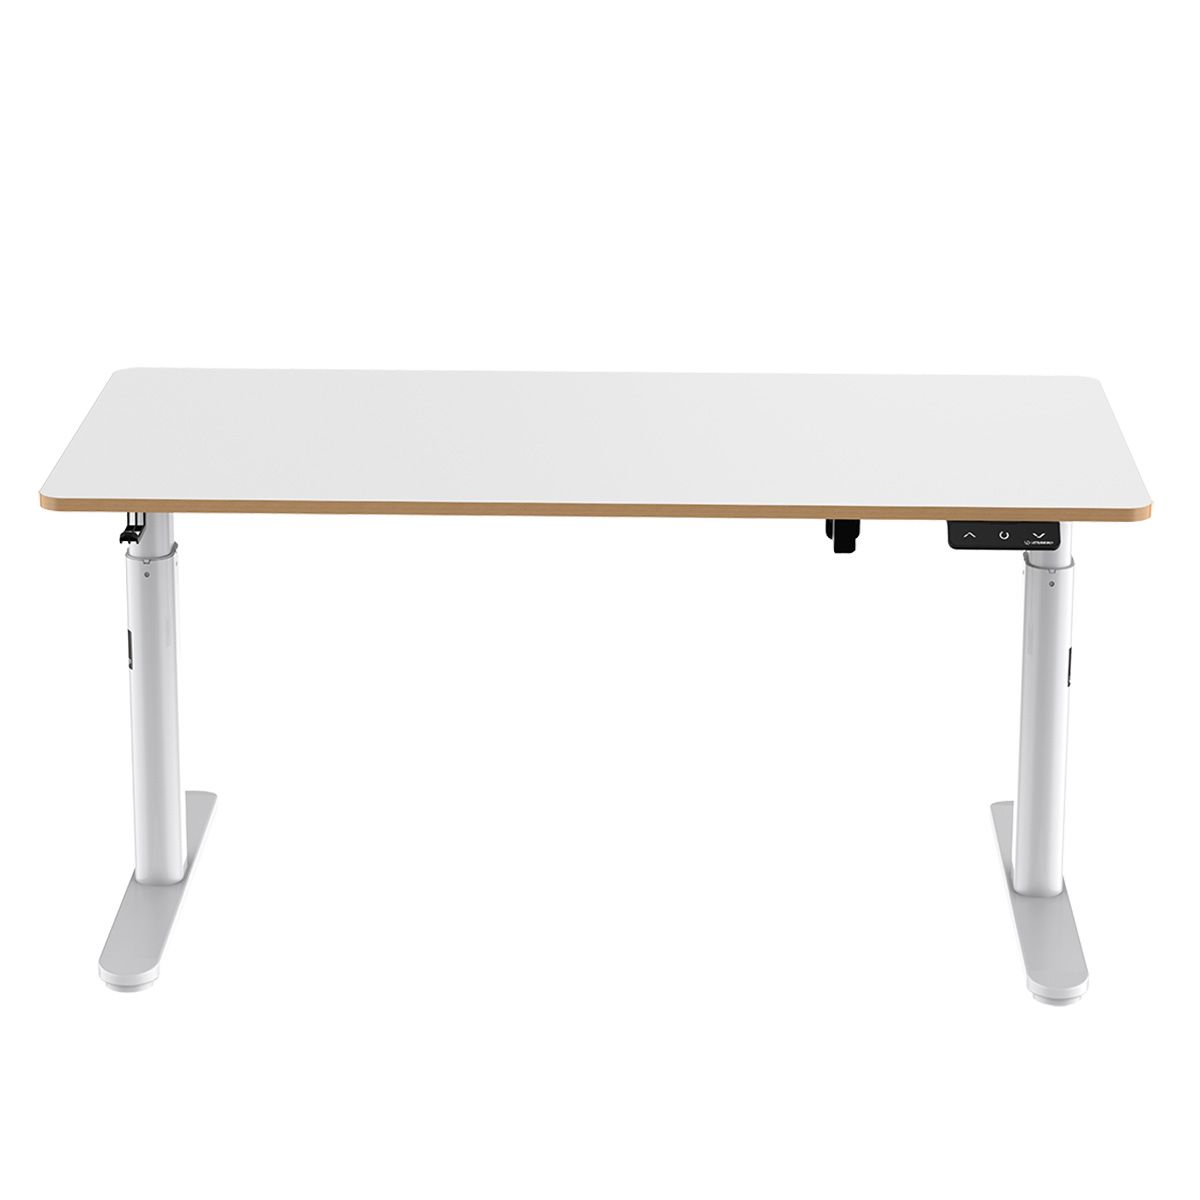 Dětský pracovní stůl, elektricky nastavitelná výška, bílá deska, 120X60 cm, 55-81 cm, PULSAR, držák sluchátek, klip na kabely, ULT